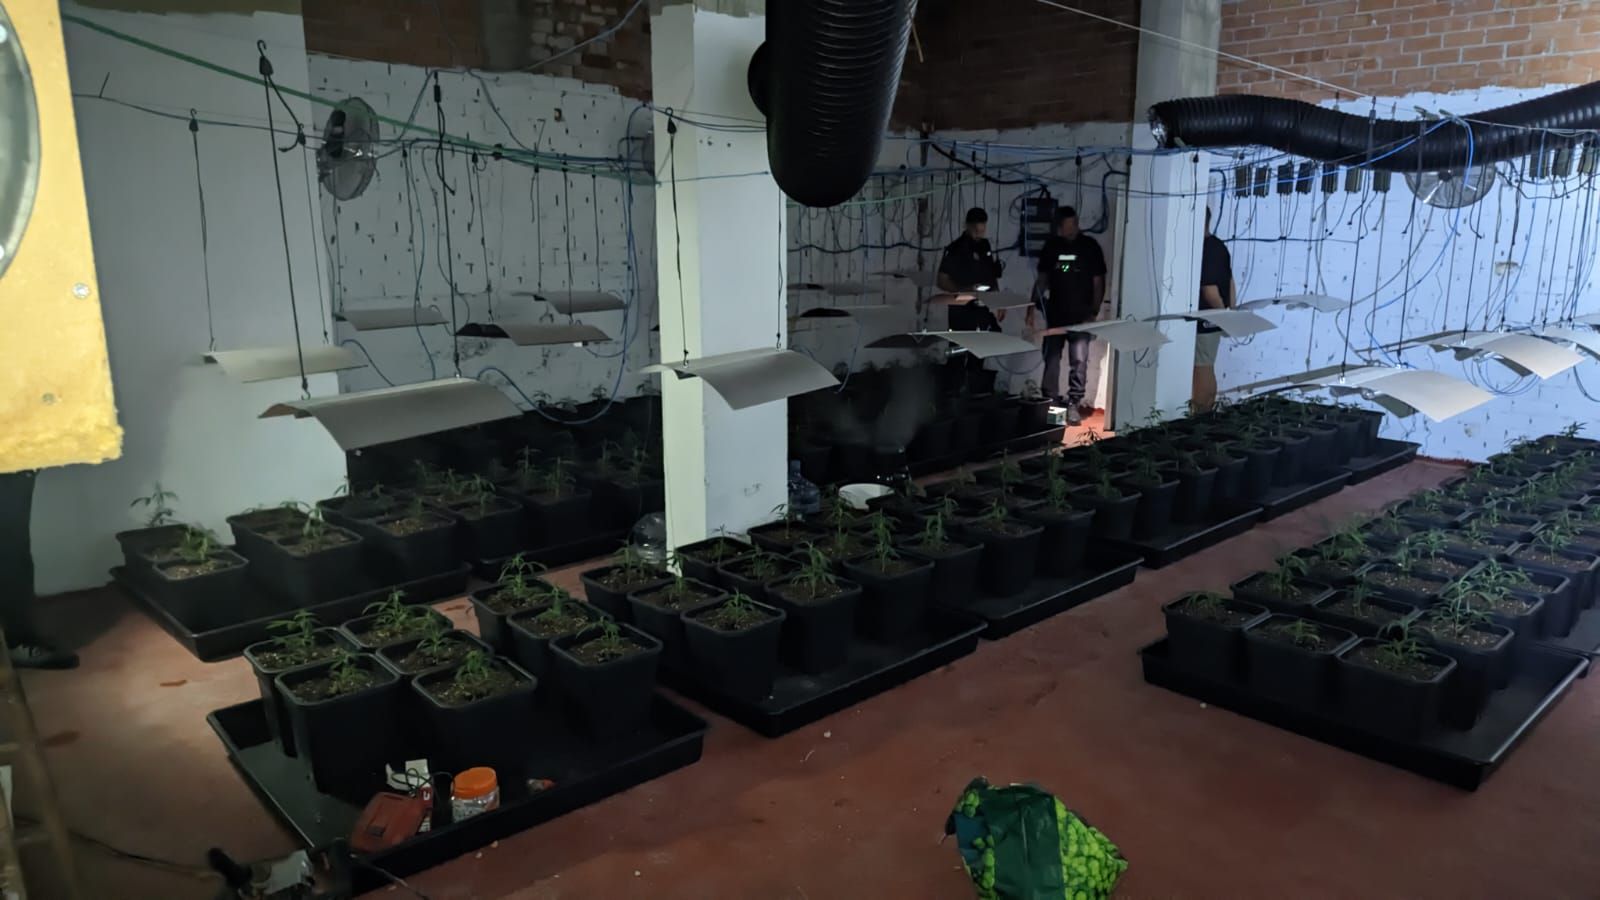 Descubren un criadero de marihuana al convertir el piso de los vecinos en un 'infierno'